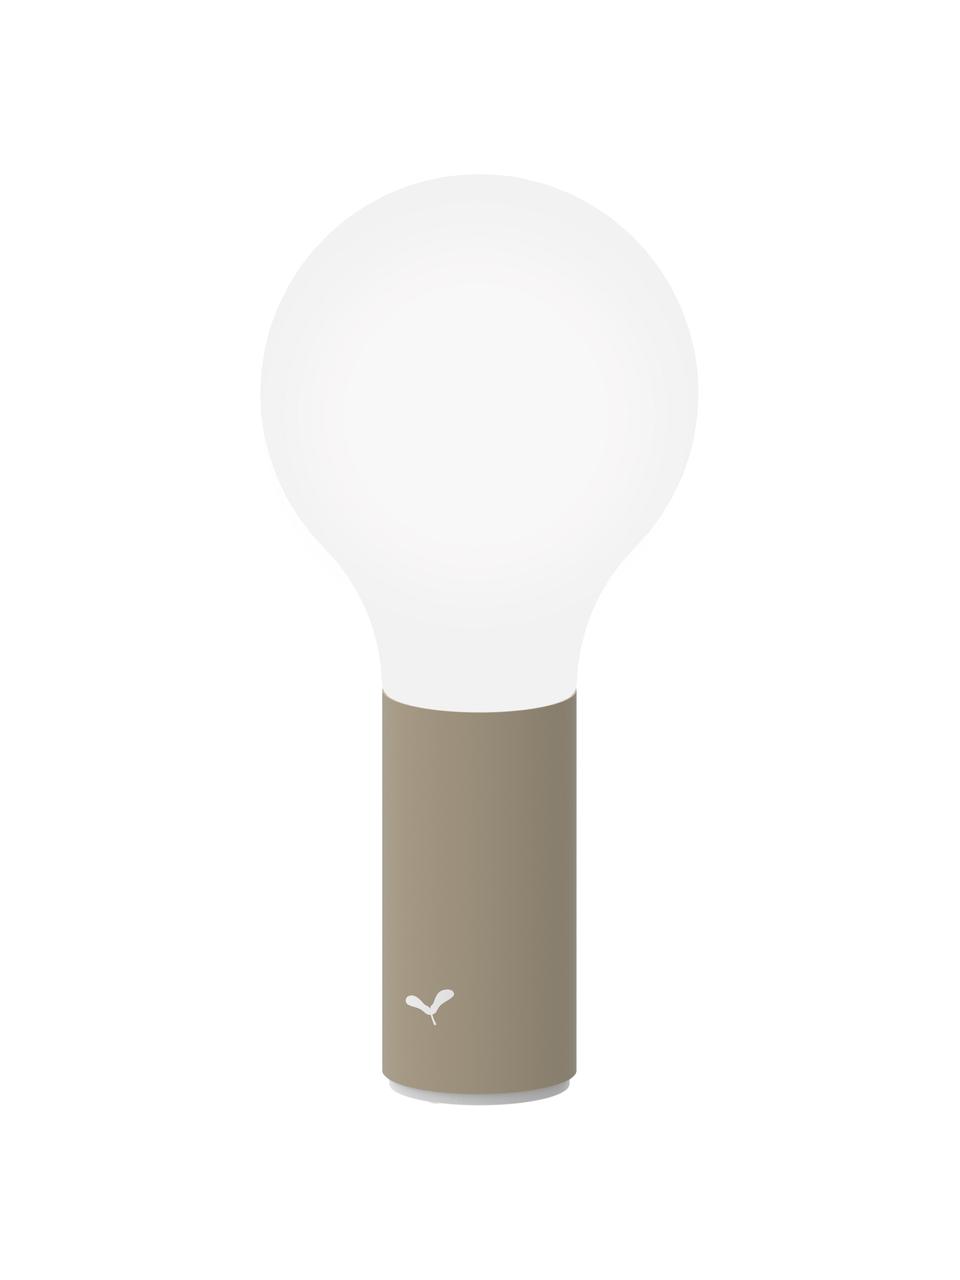 Mobile Dimmbare Außenleuchte Aplô, Lampenschirm: Polyethylen, Sockel: Aluminium, beschichtet, Weiß, Muskatbraun, Ø 12 x H 25 cm